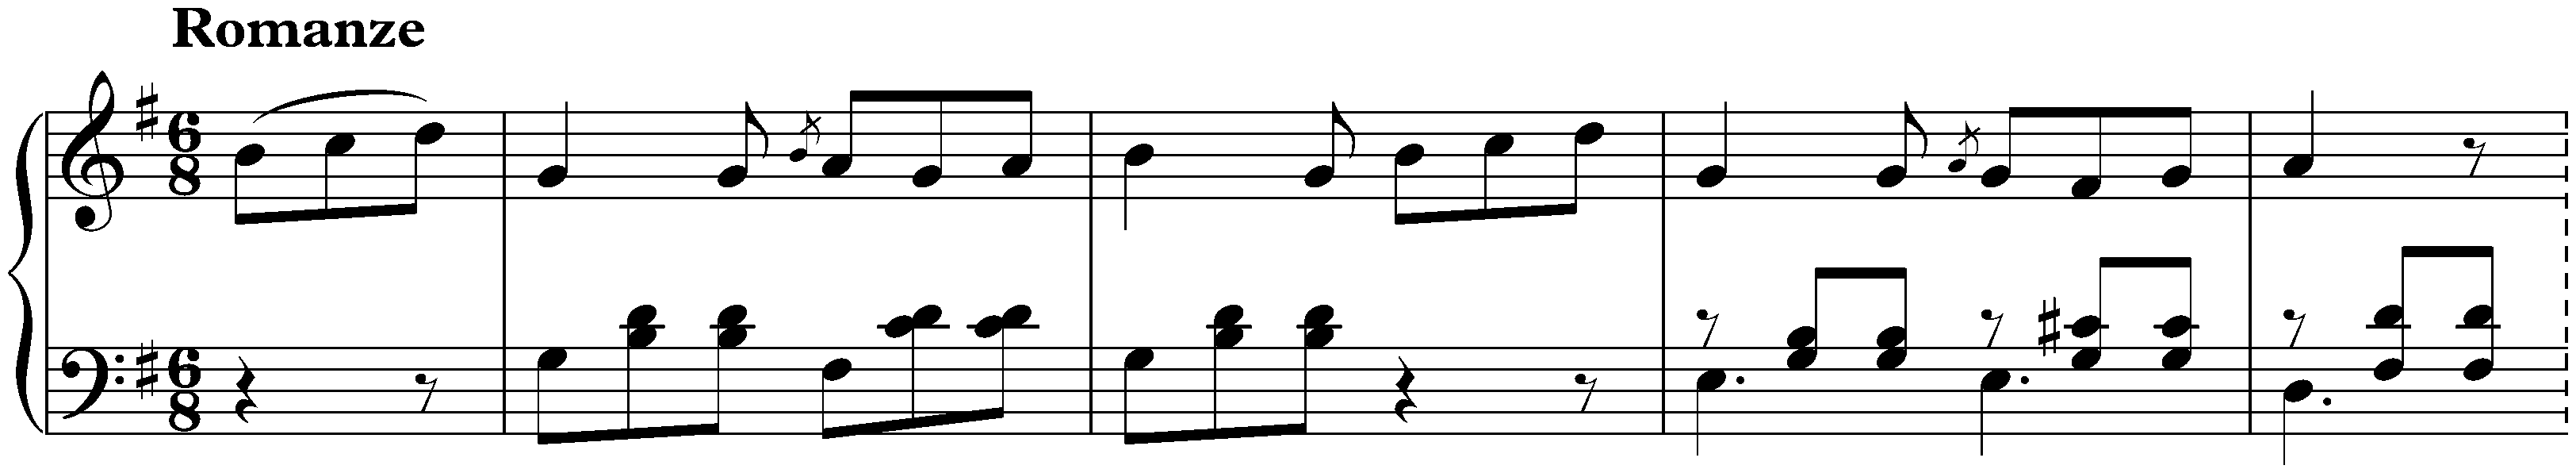 Sonatina in G major, Anh. 5 no. 1; 2. Romanze